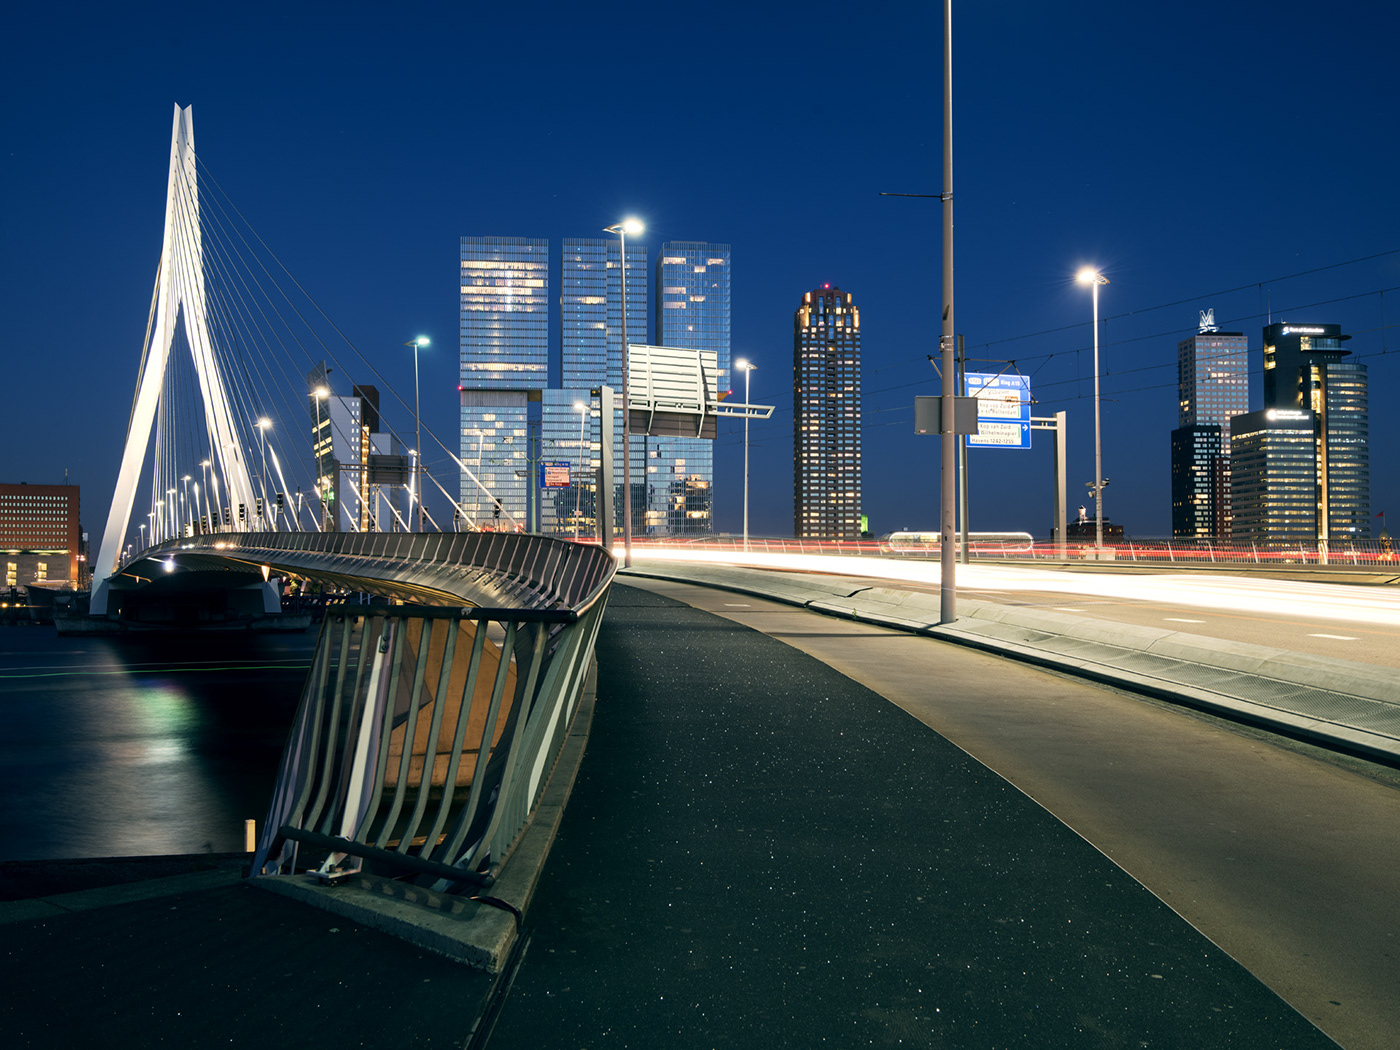 The Netherlands Holland Rotterdam Europe architecture cityscape urbanism   modern design Erasmus Bridge